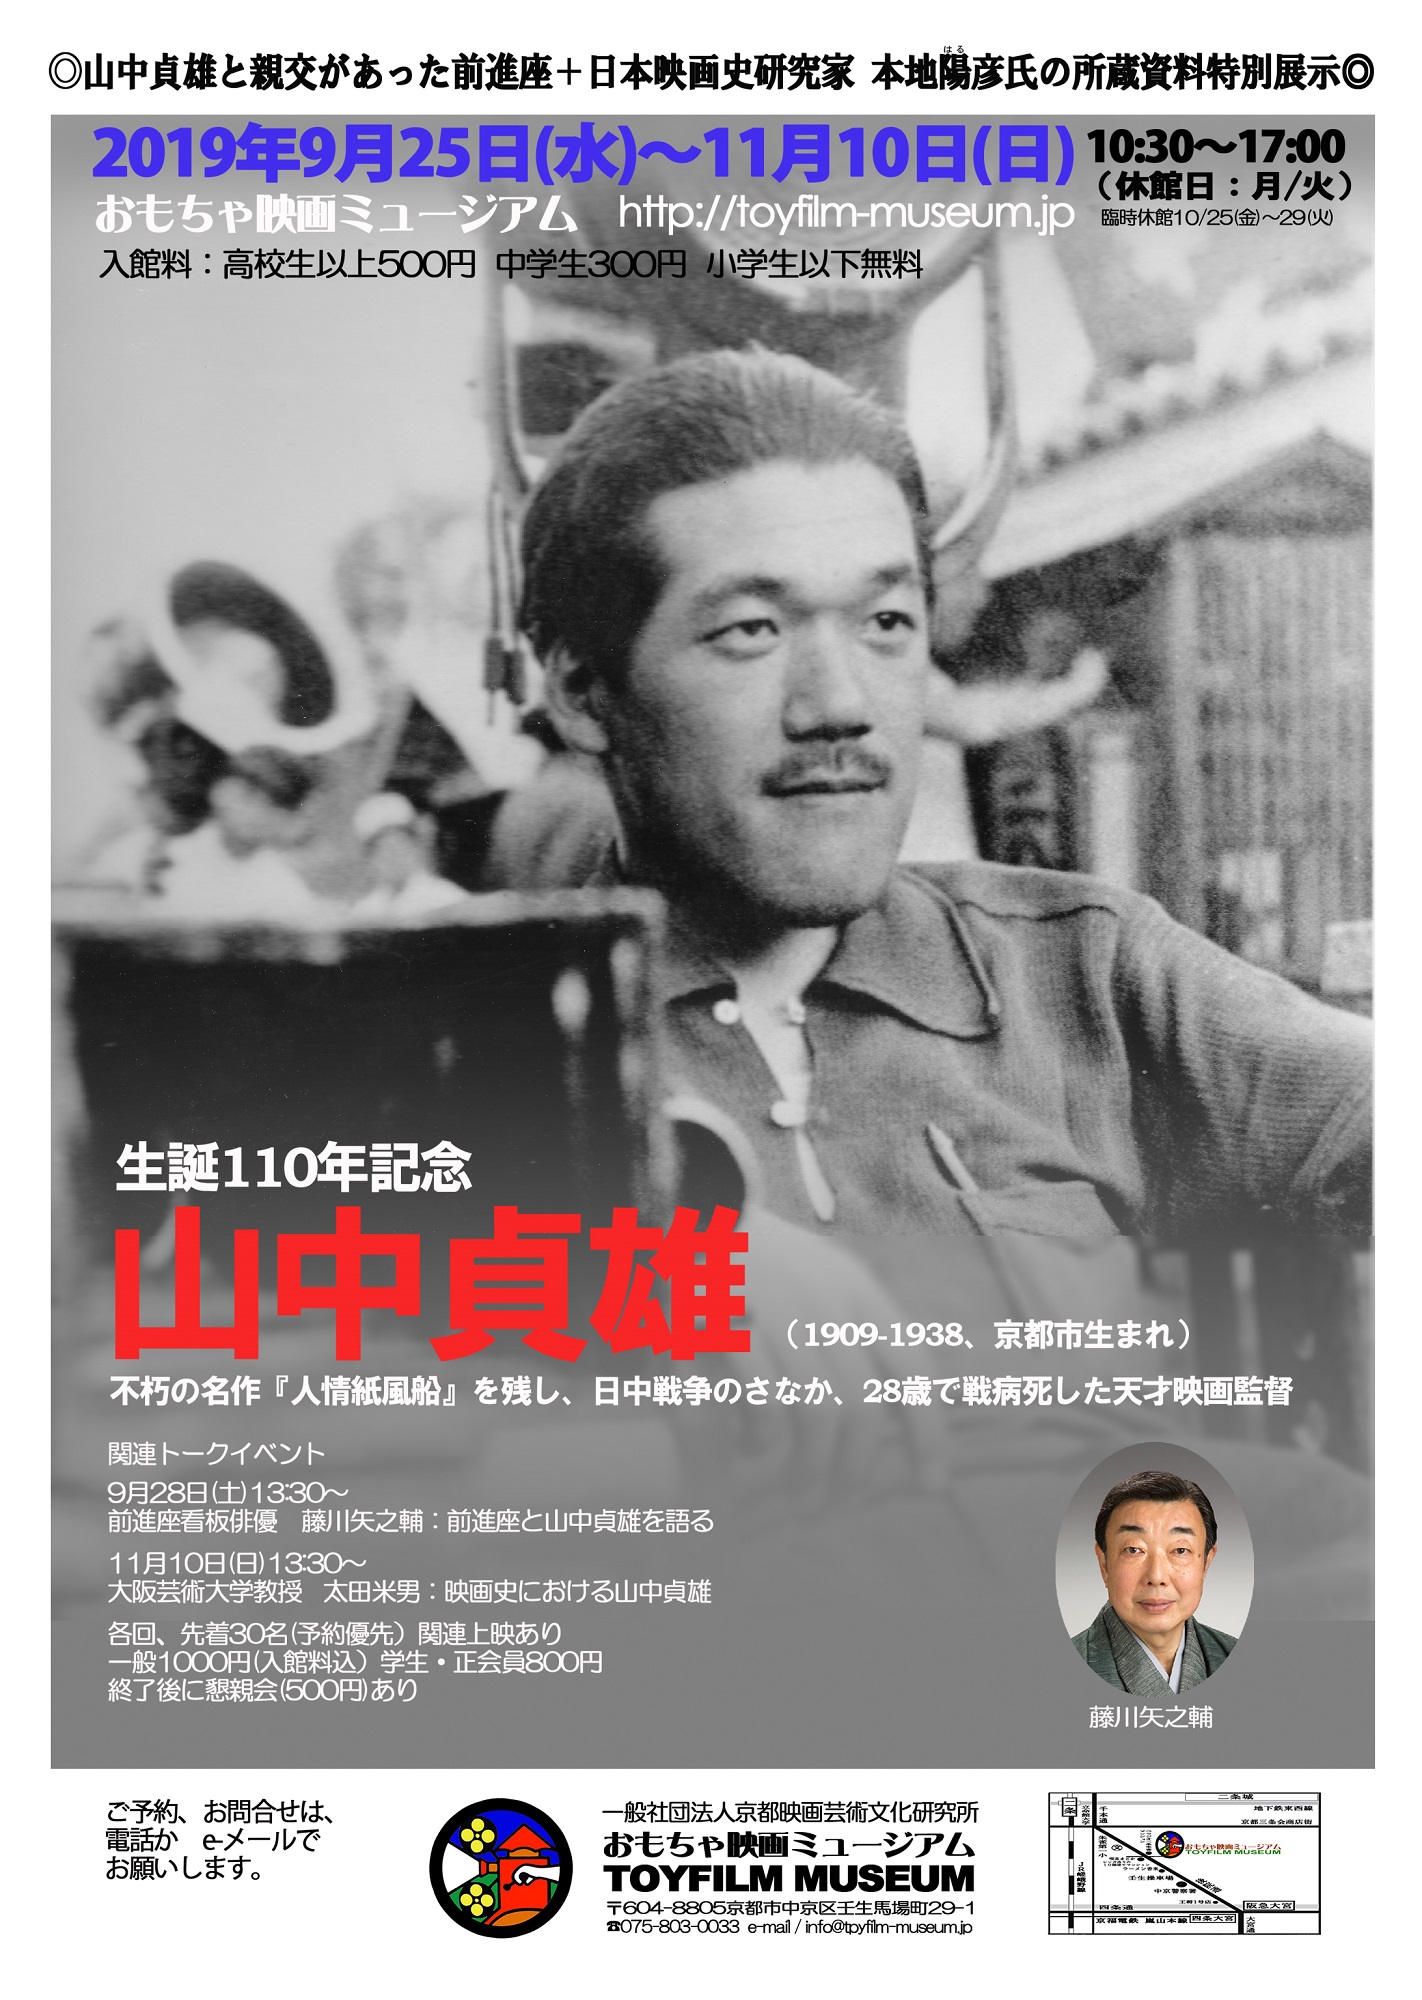 京都民報に上倉庸敬・大阪大学名誉教授が寄稿した「映画監督山中貞雄生誕110年」についての文章が掲載‼